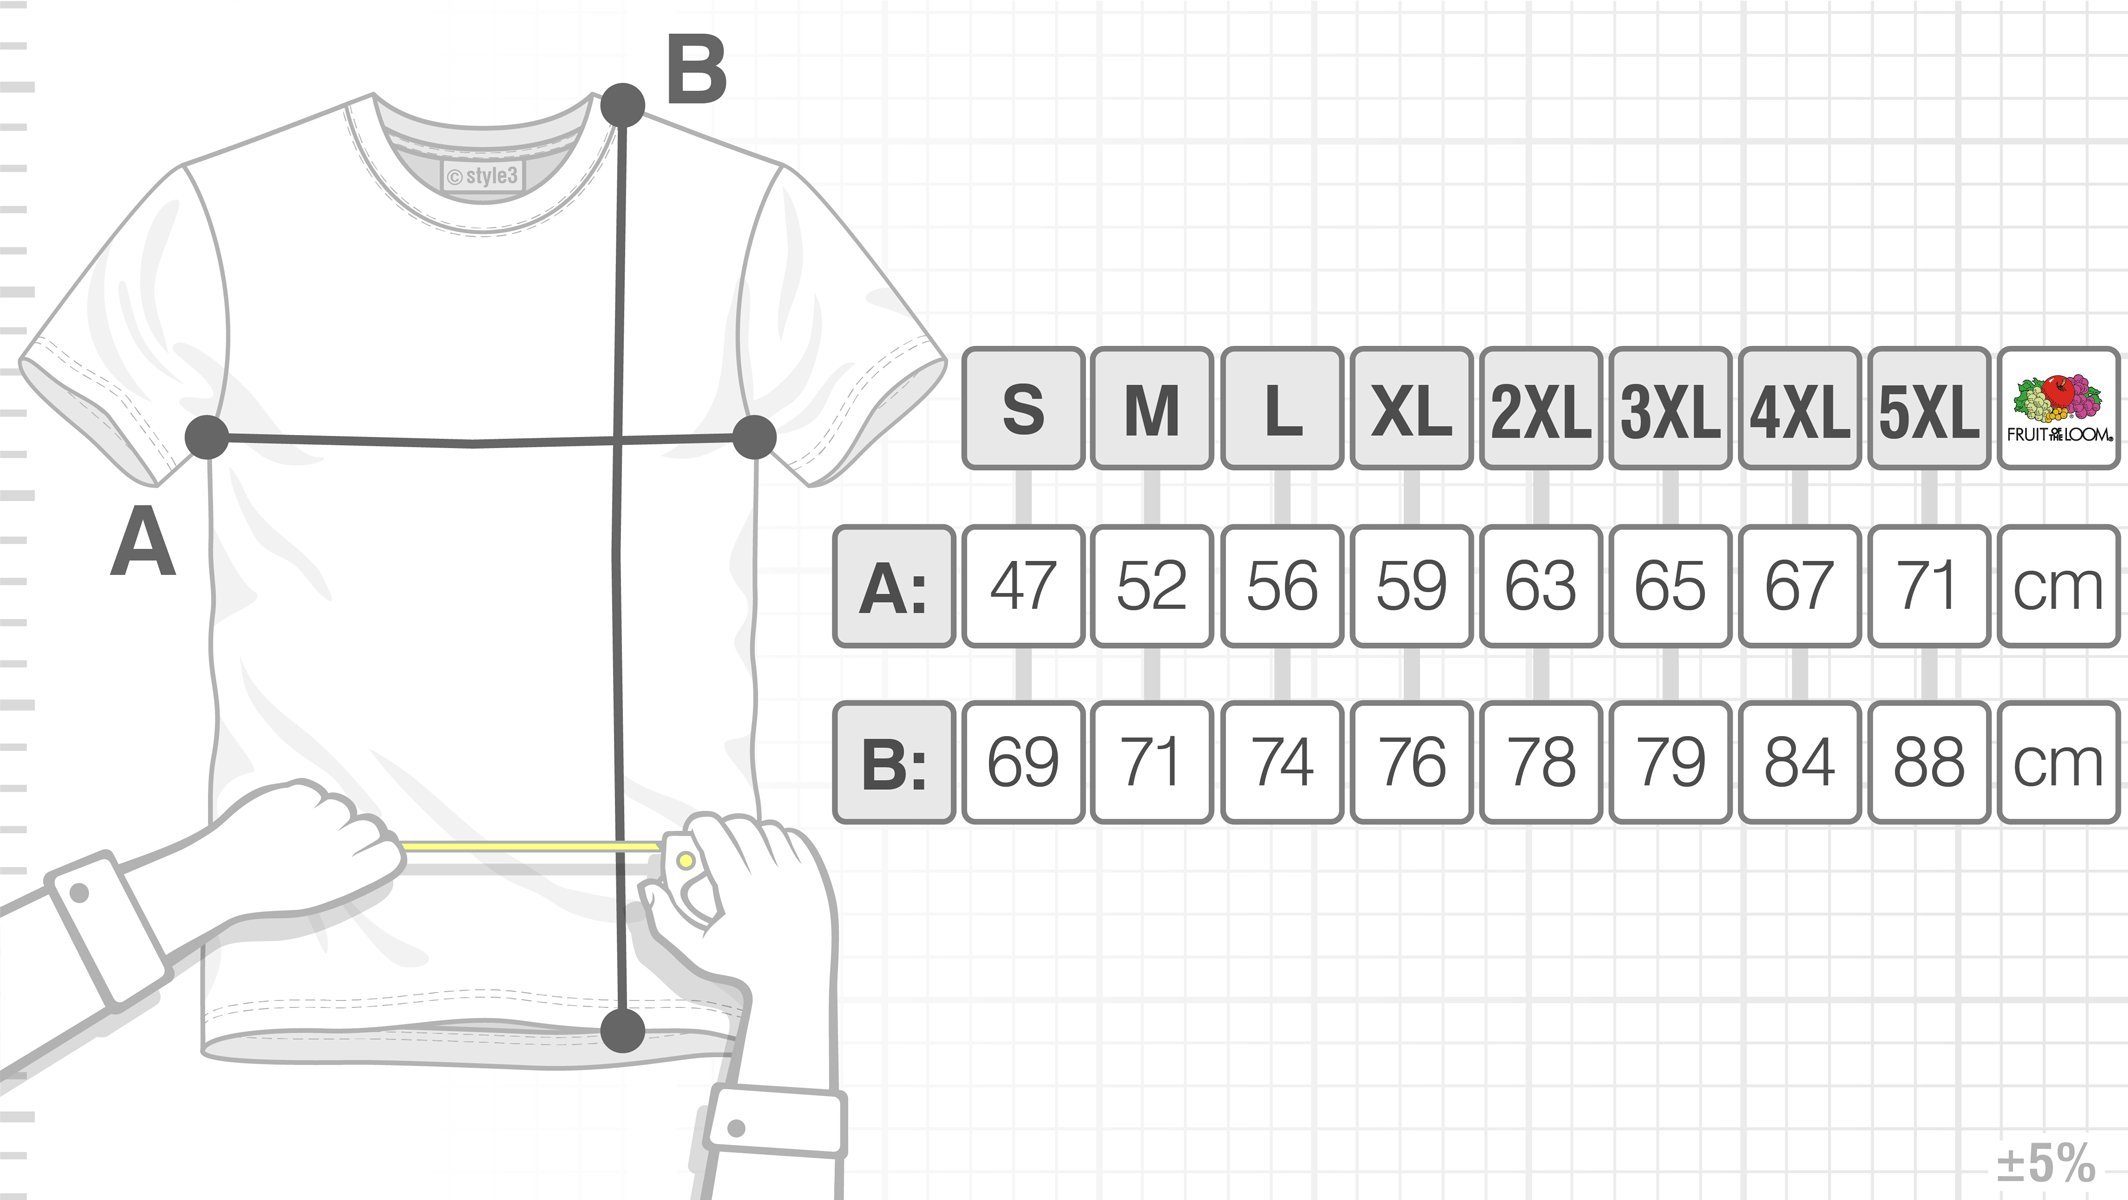 T-Shirt Penrose style3 weiß Herren Sheldon Big Cube Print-Shirt Cooper würfel Escher bang Theory Dreieck